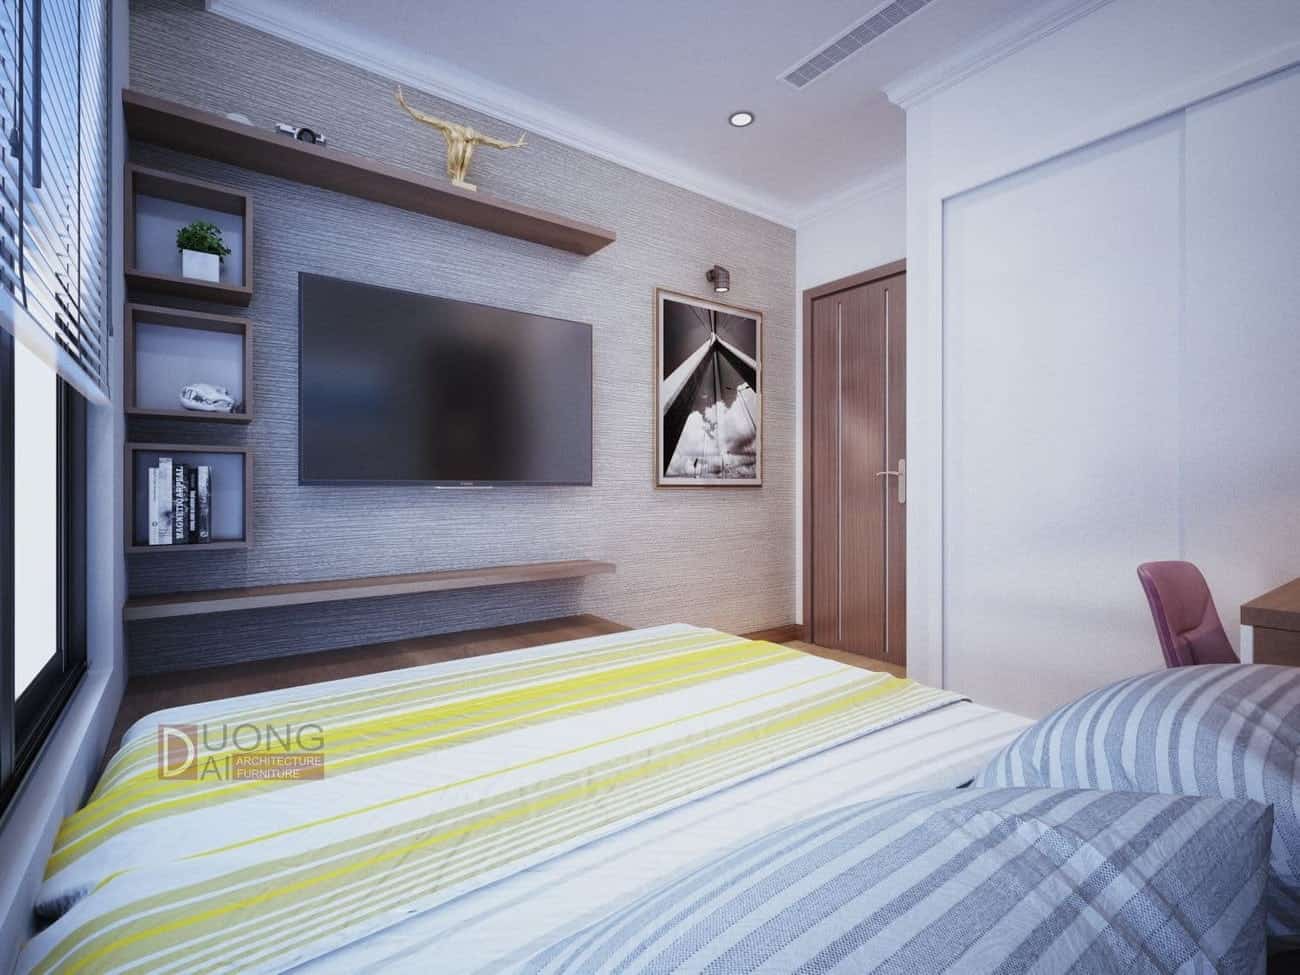 Thiết kế nội thất chung cư Vinhomes Gardenia hiện đại giá rẻ hợp lý